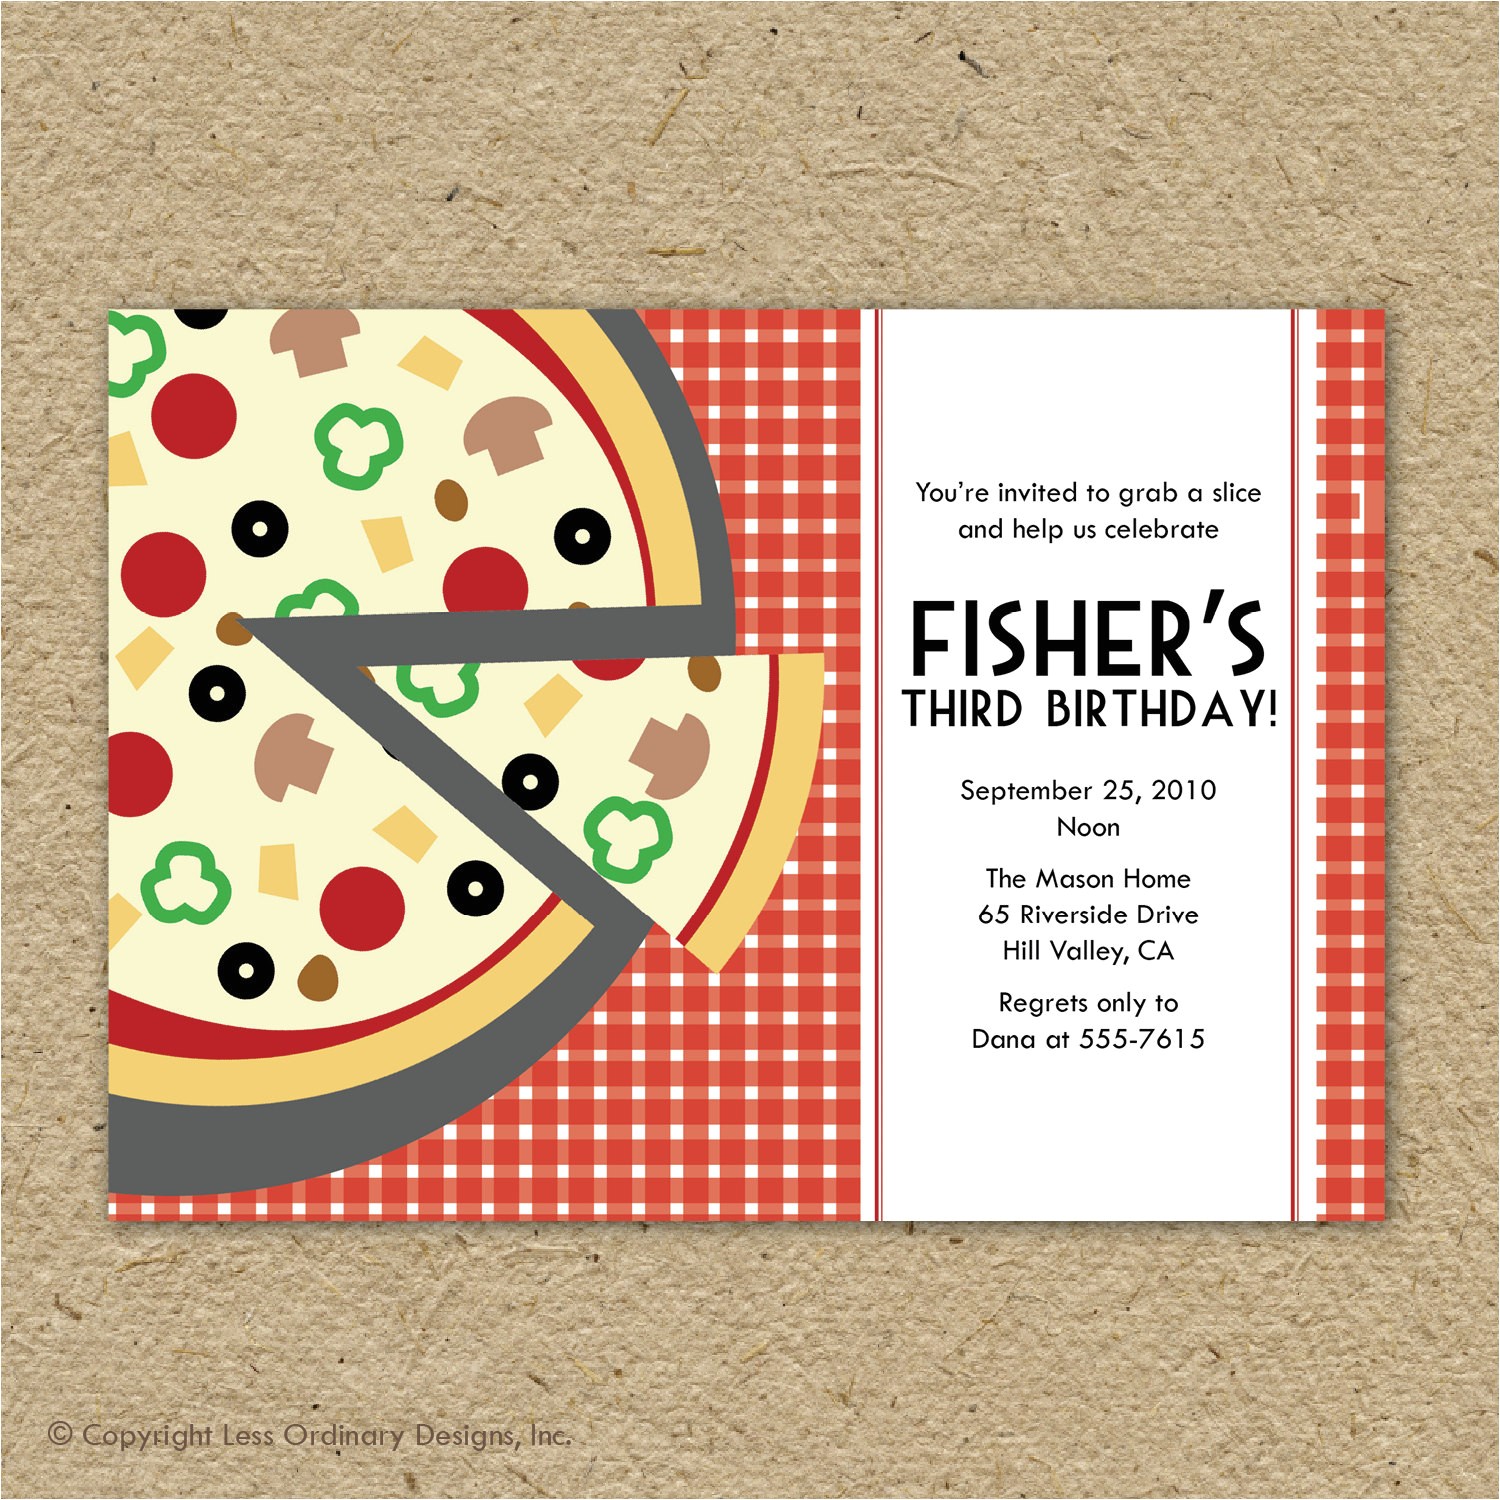 pizza party birthday invitations